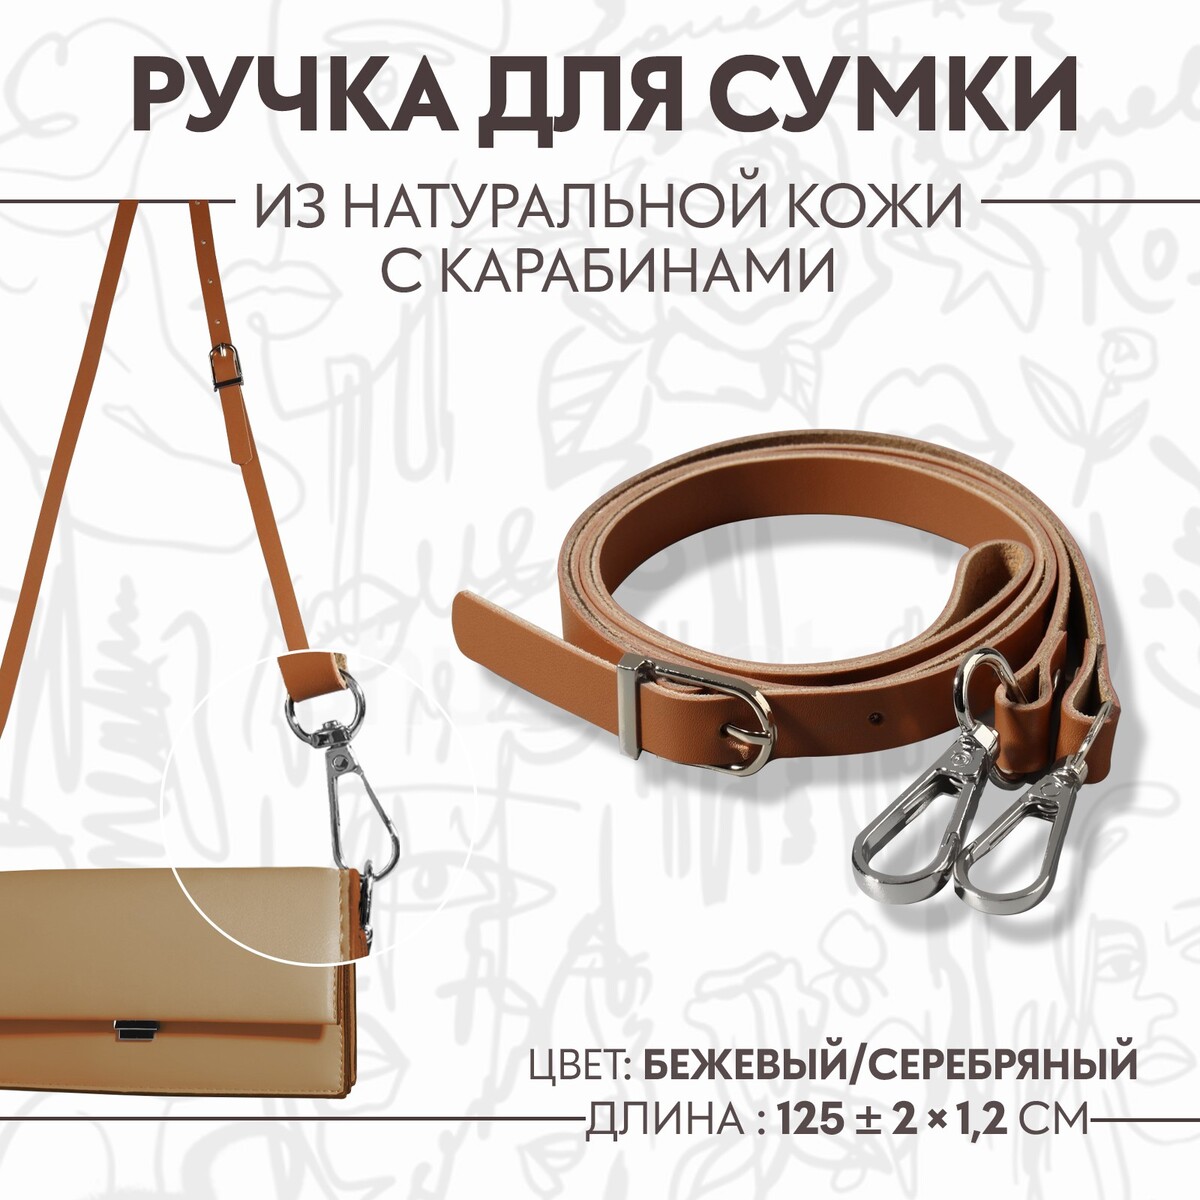 Ручка для сумки из натуральной кожи, регулируемая, с карабинами, 125 ± 2 см × 1,2 см, цвет бежевый/серебряный